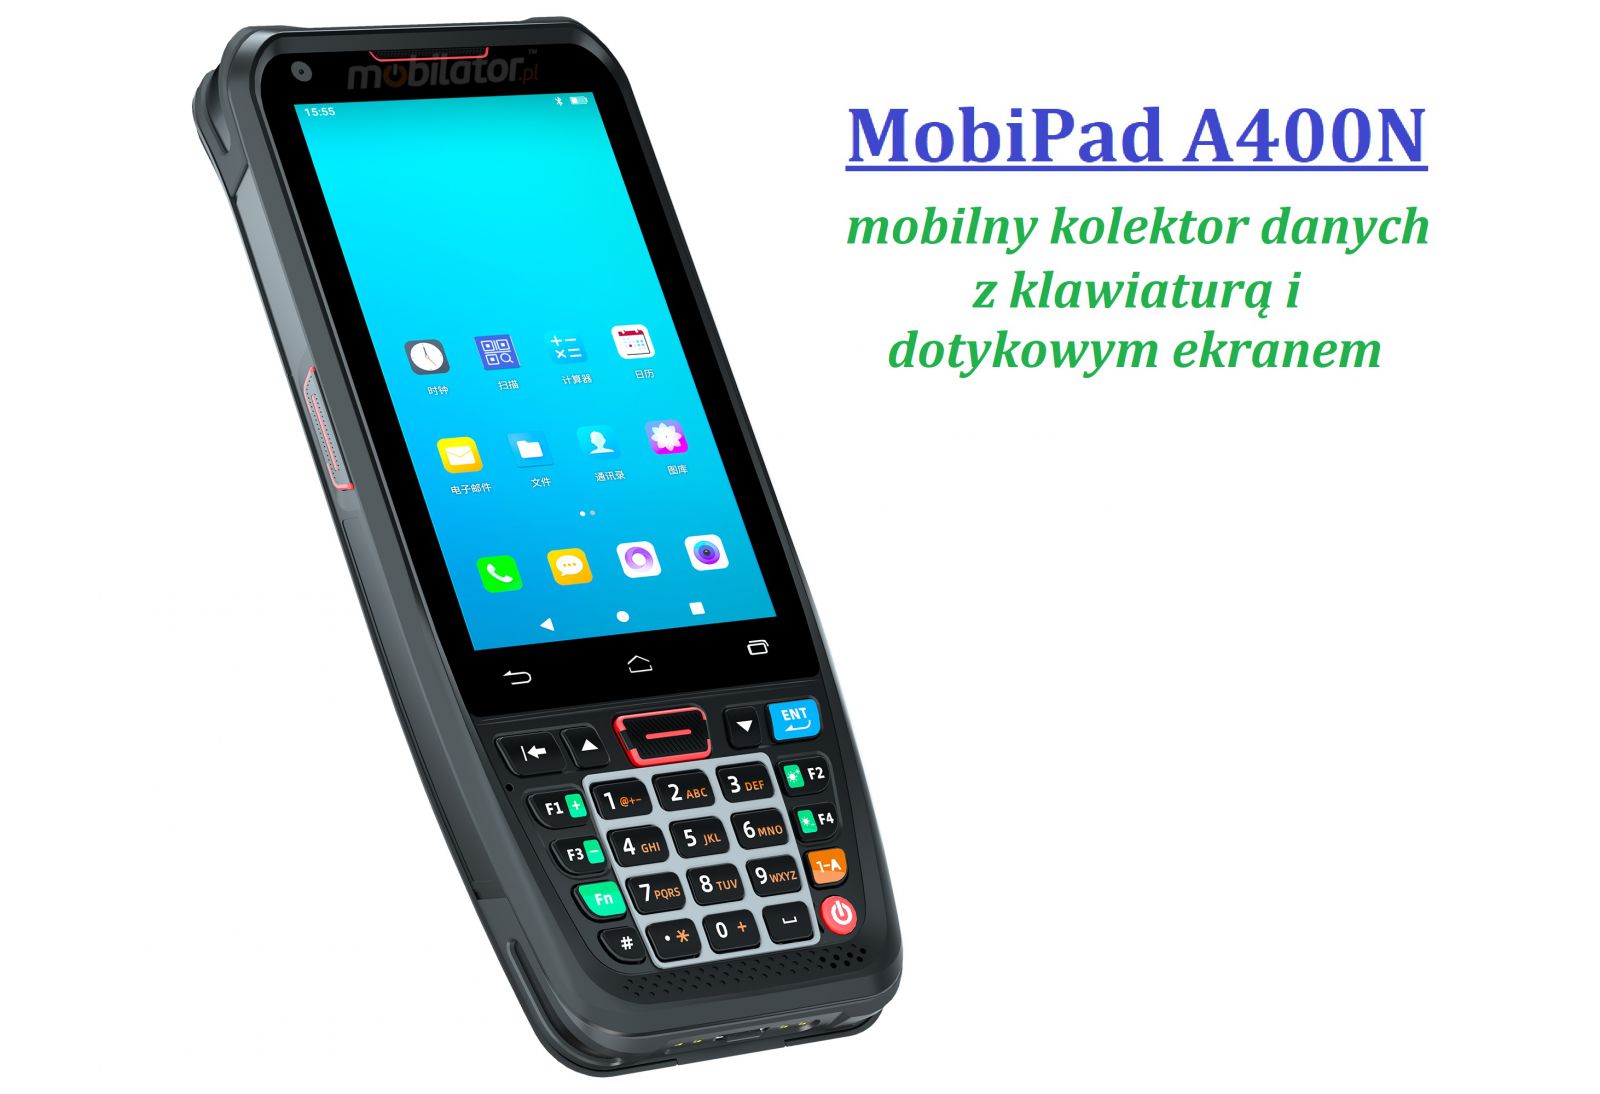 MobiPad A400N v.1 - Porczny i wygodny w uytkowaniu kolektor danych z 3GB RAM i 32GB ROM, Bluetooth, GPS, WiFi i norm IP66